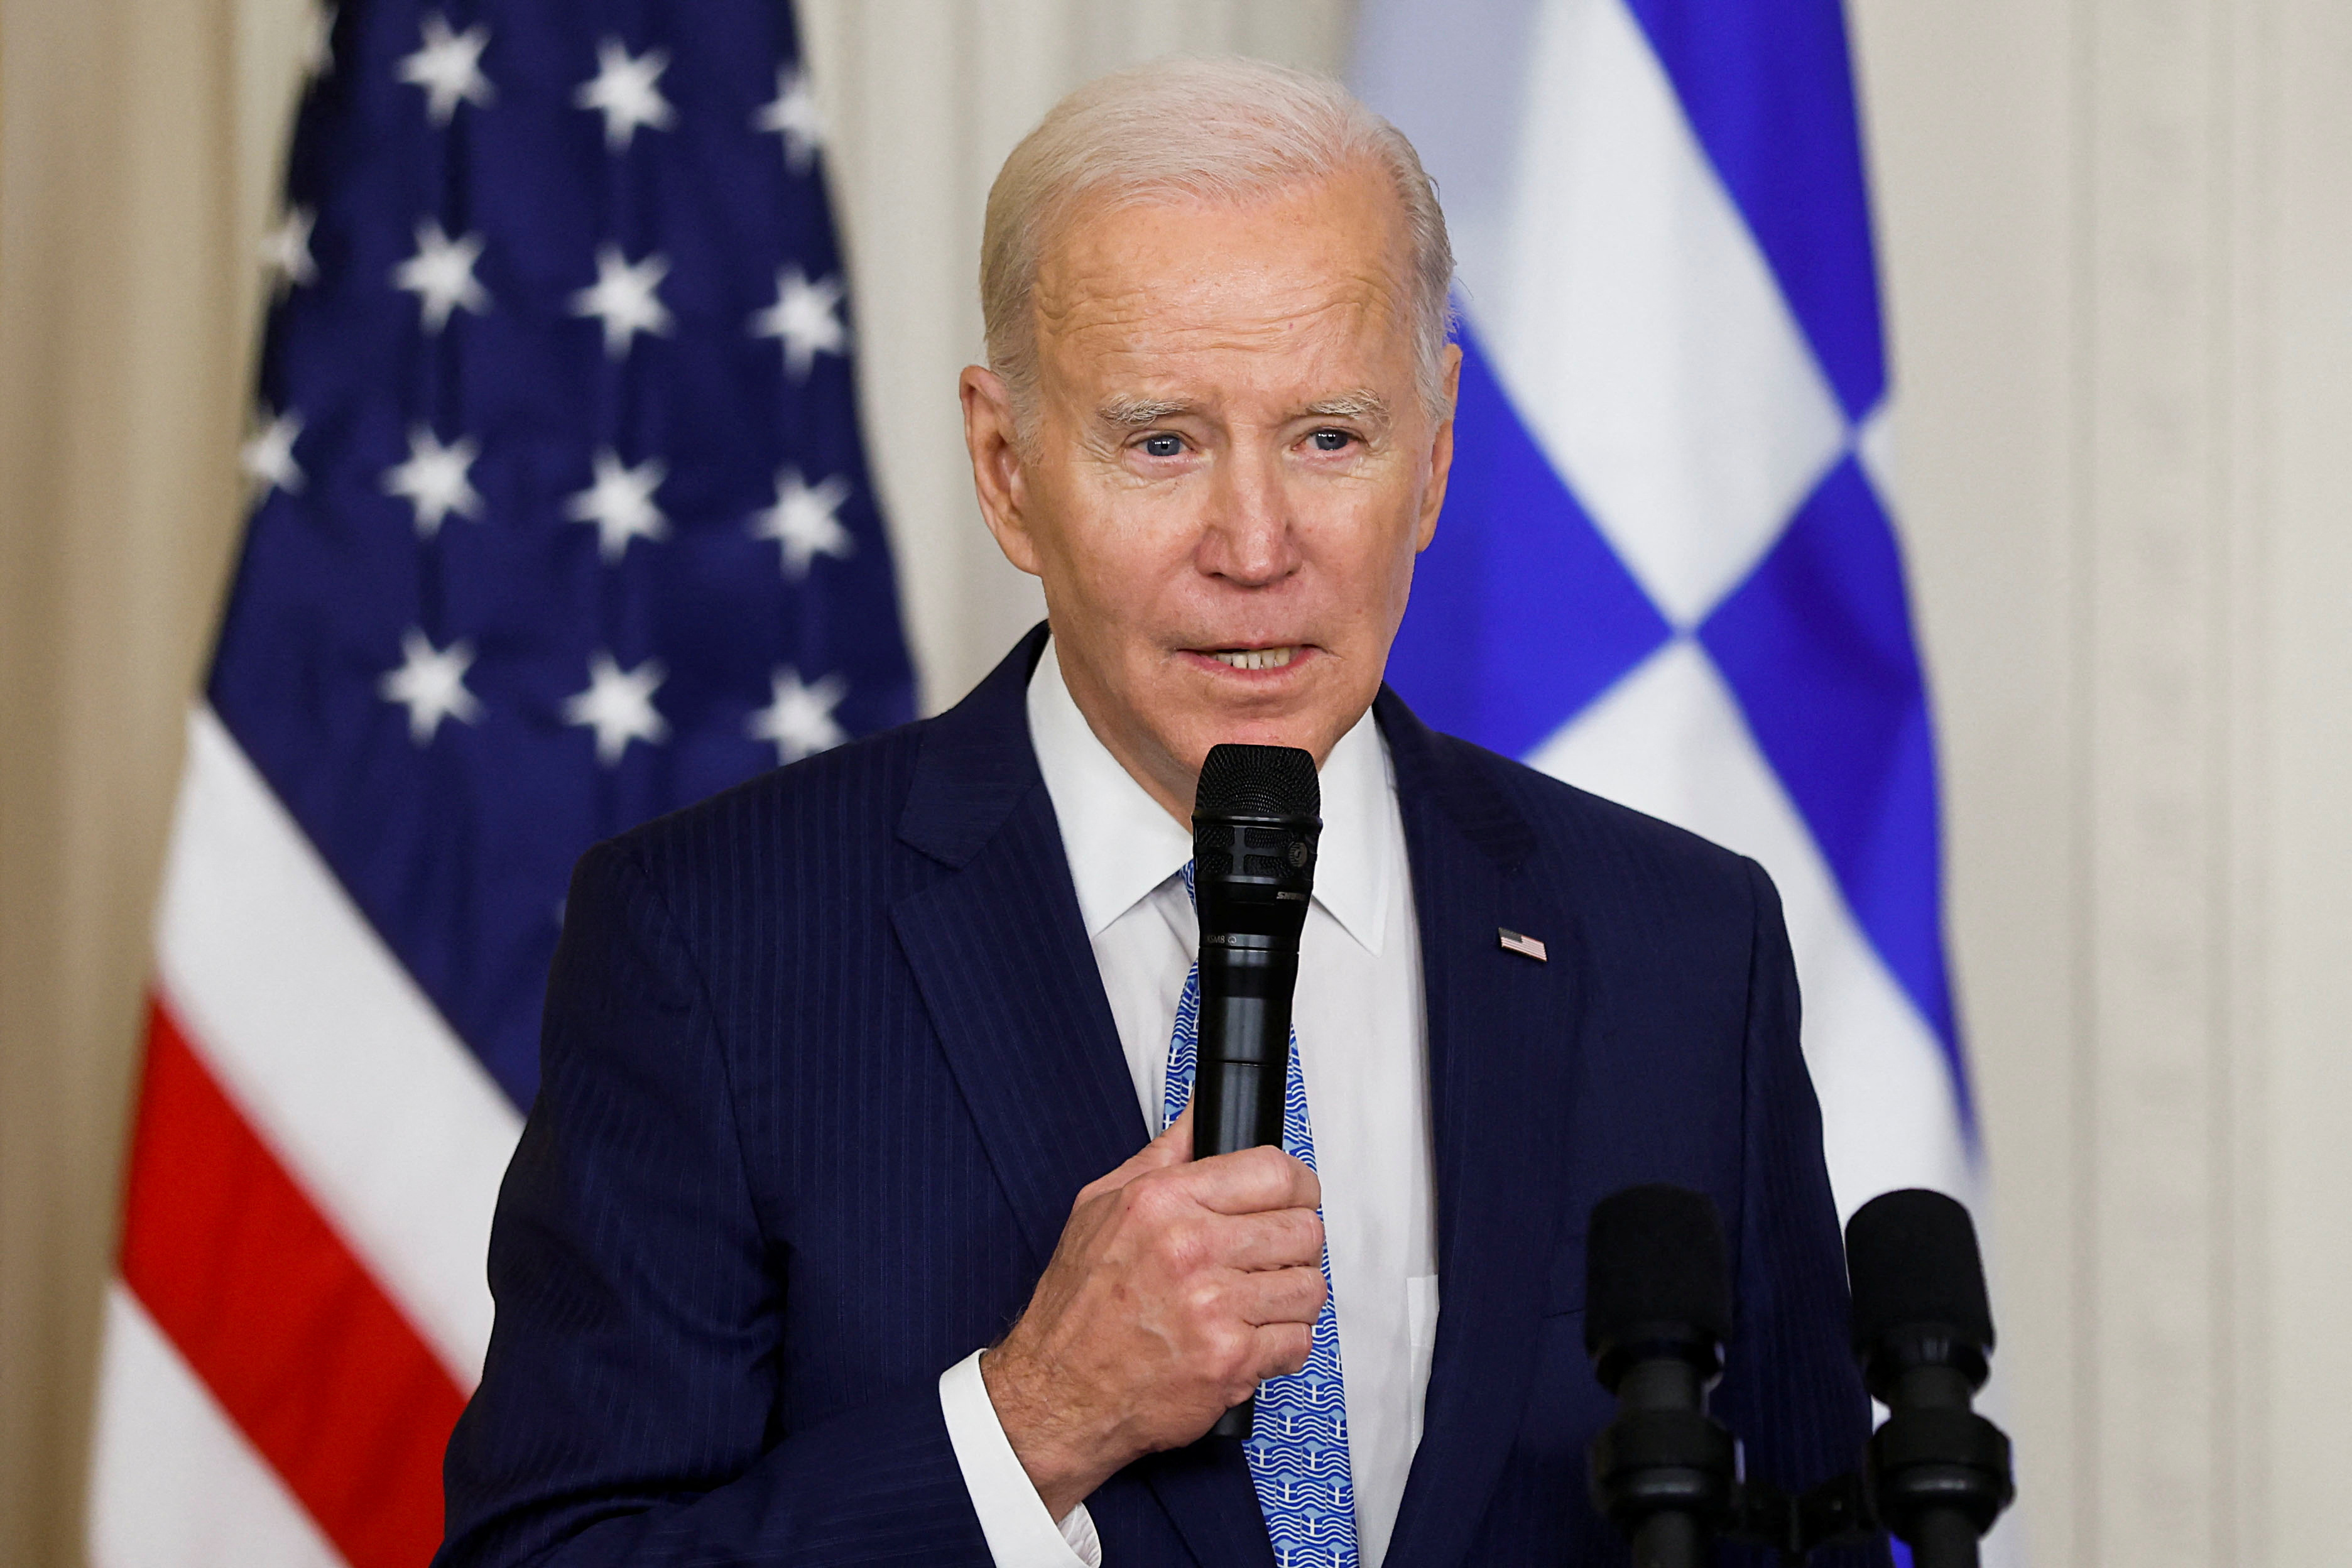 Joe Biden exigió a Rusia que libere al periodista estadounidense detenido: “Déjenlo ir”